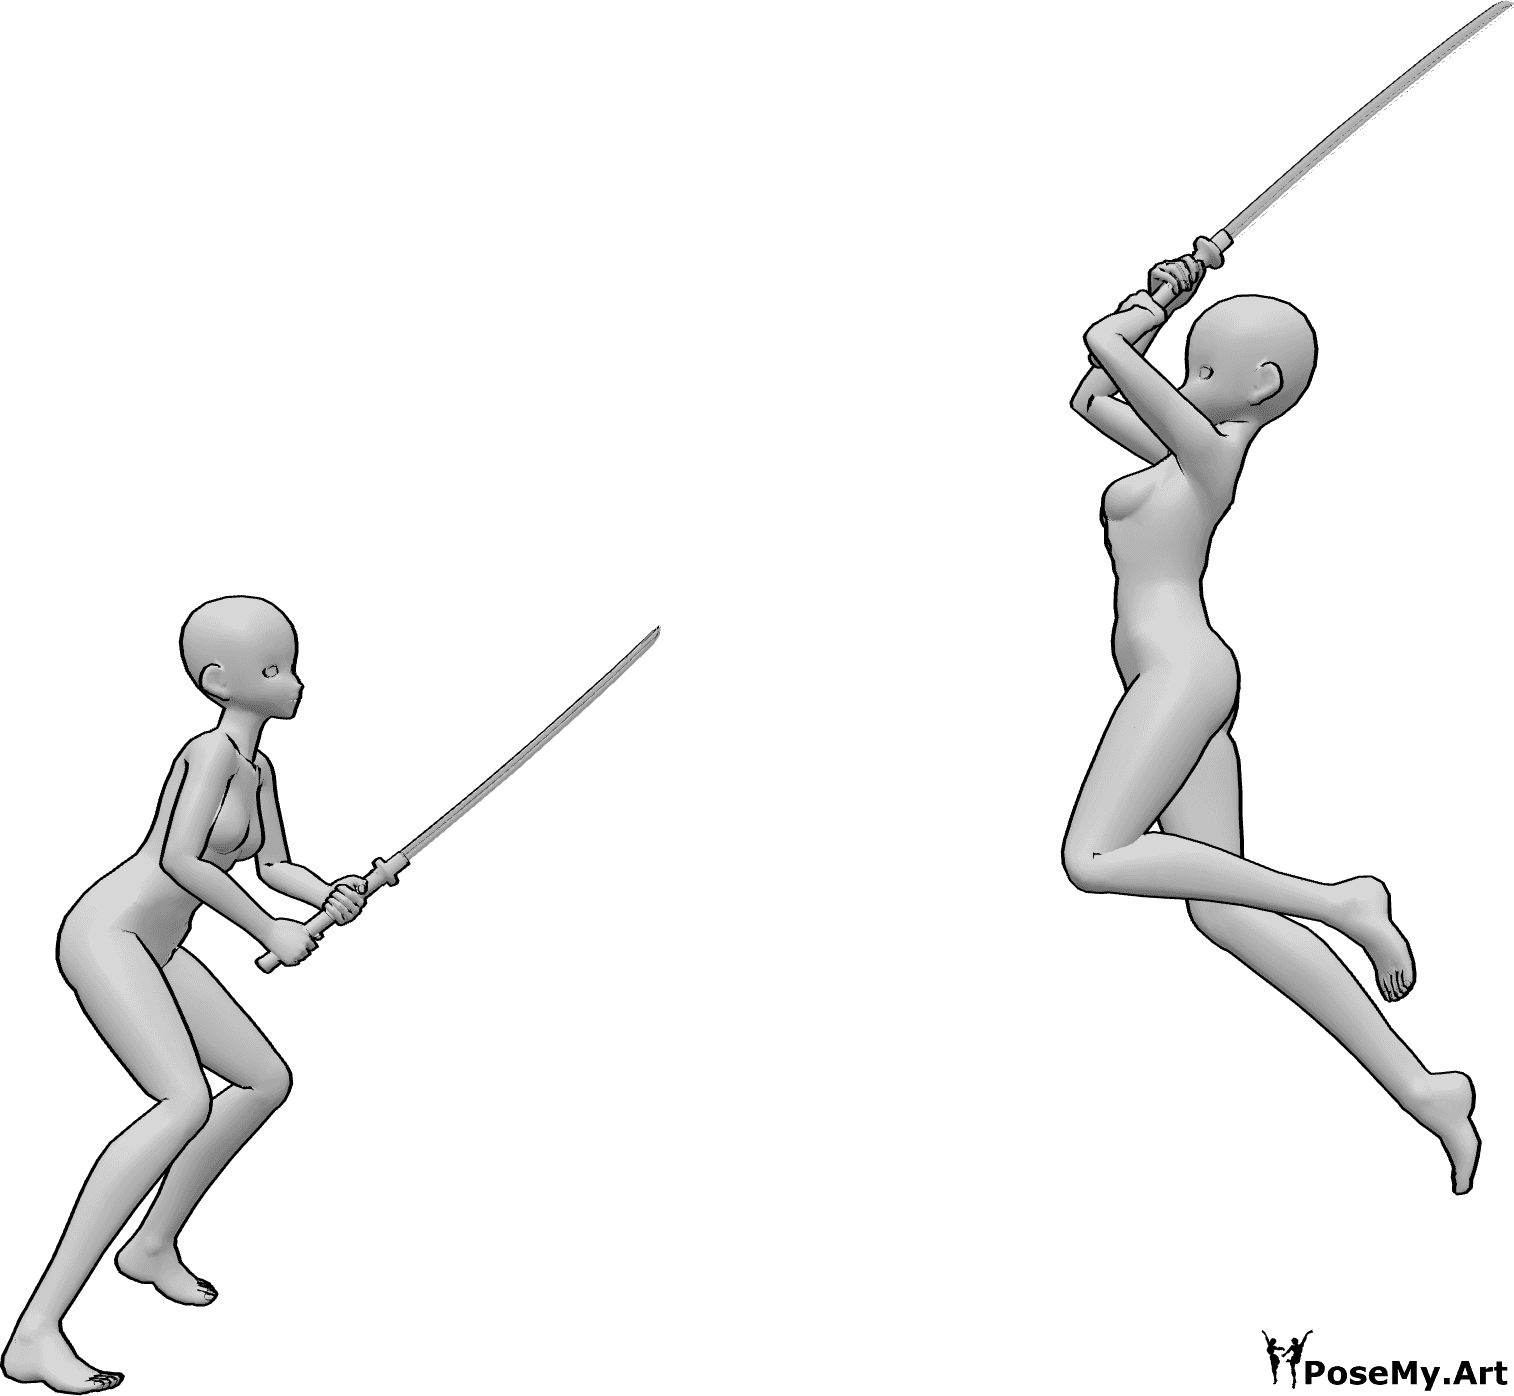 Posen-Referenz- Anime Katana Kampf Pose - Anime-Frauen kämpfen mit Katanas, eine von ihnen springt hoch und schlägt zu